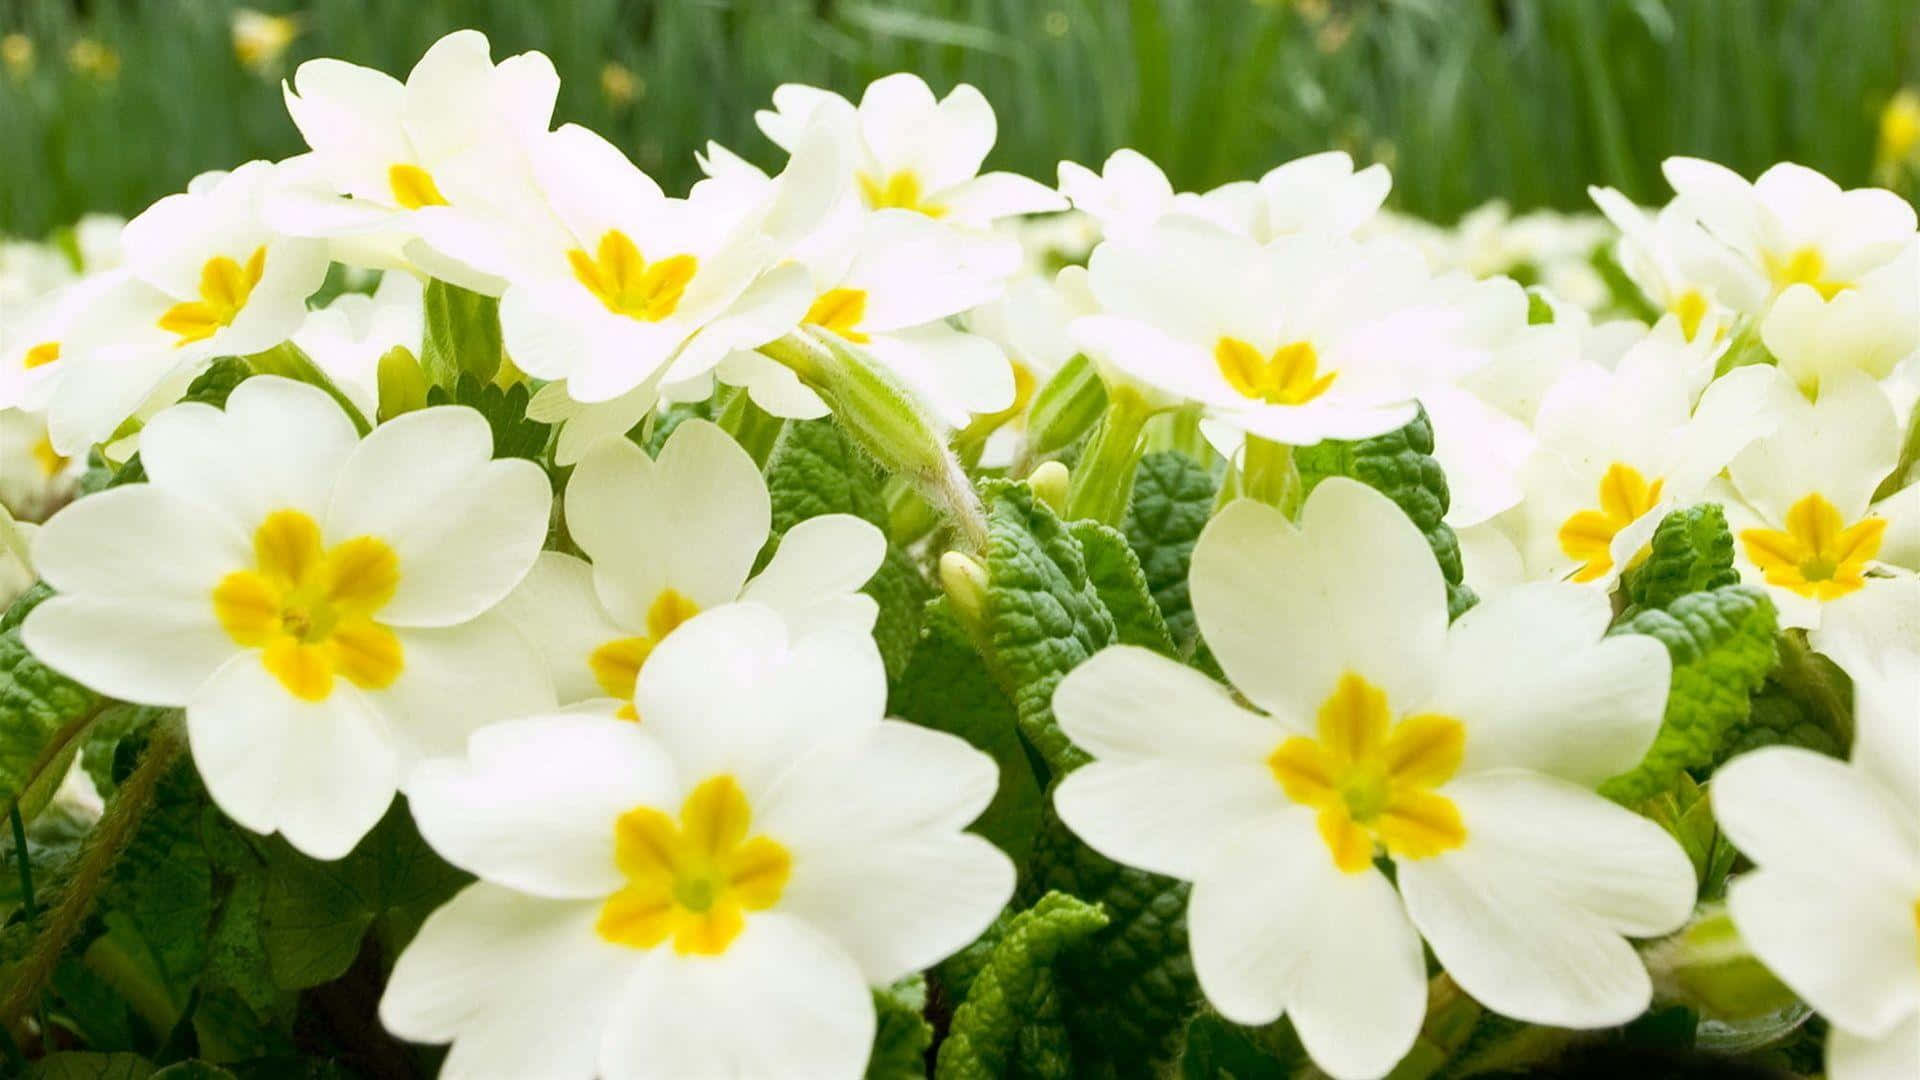 Elegant White Flowers in Full Bloom